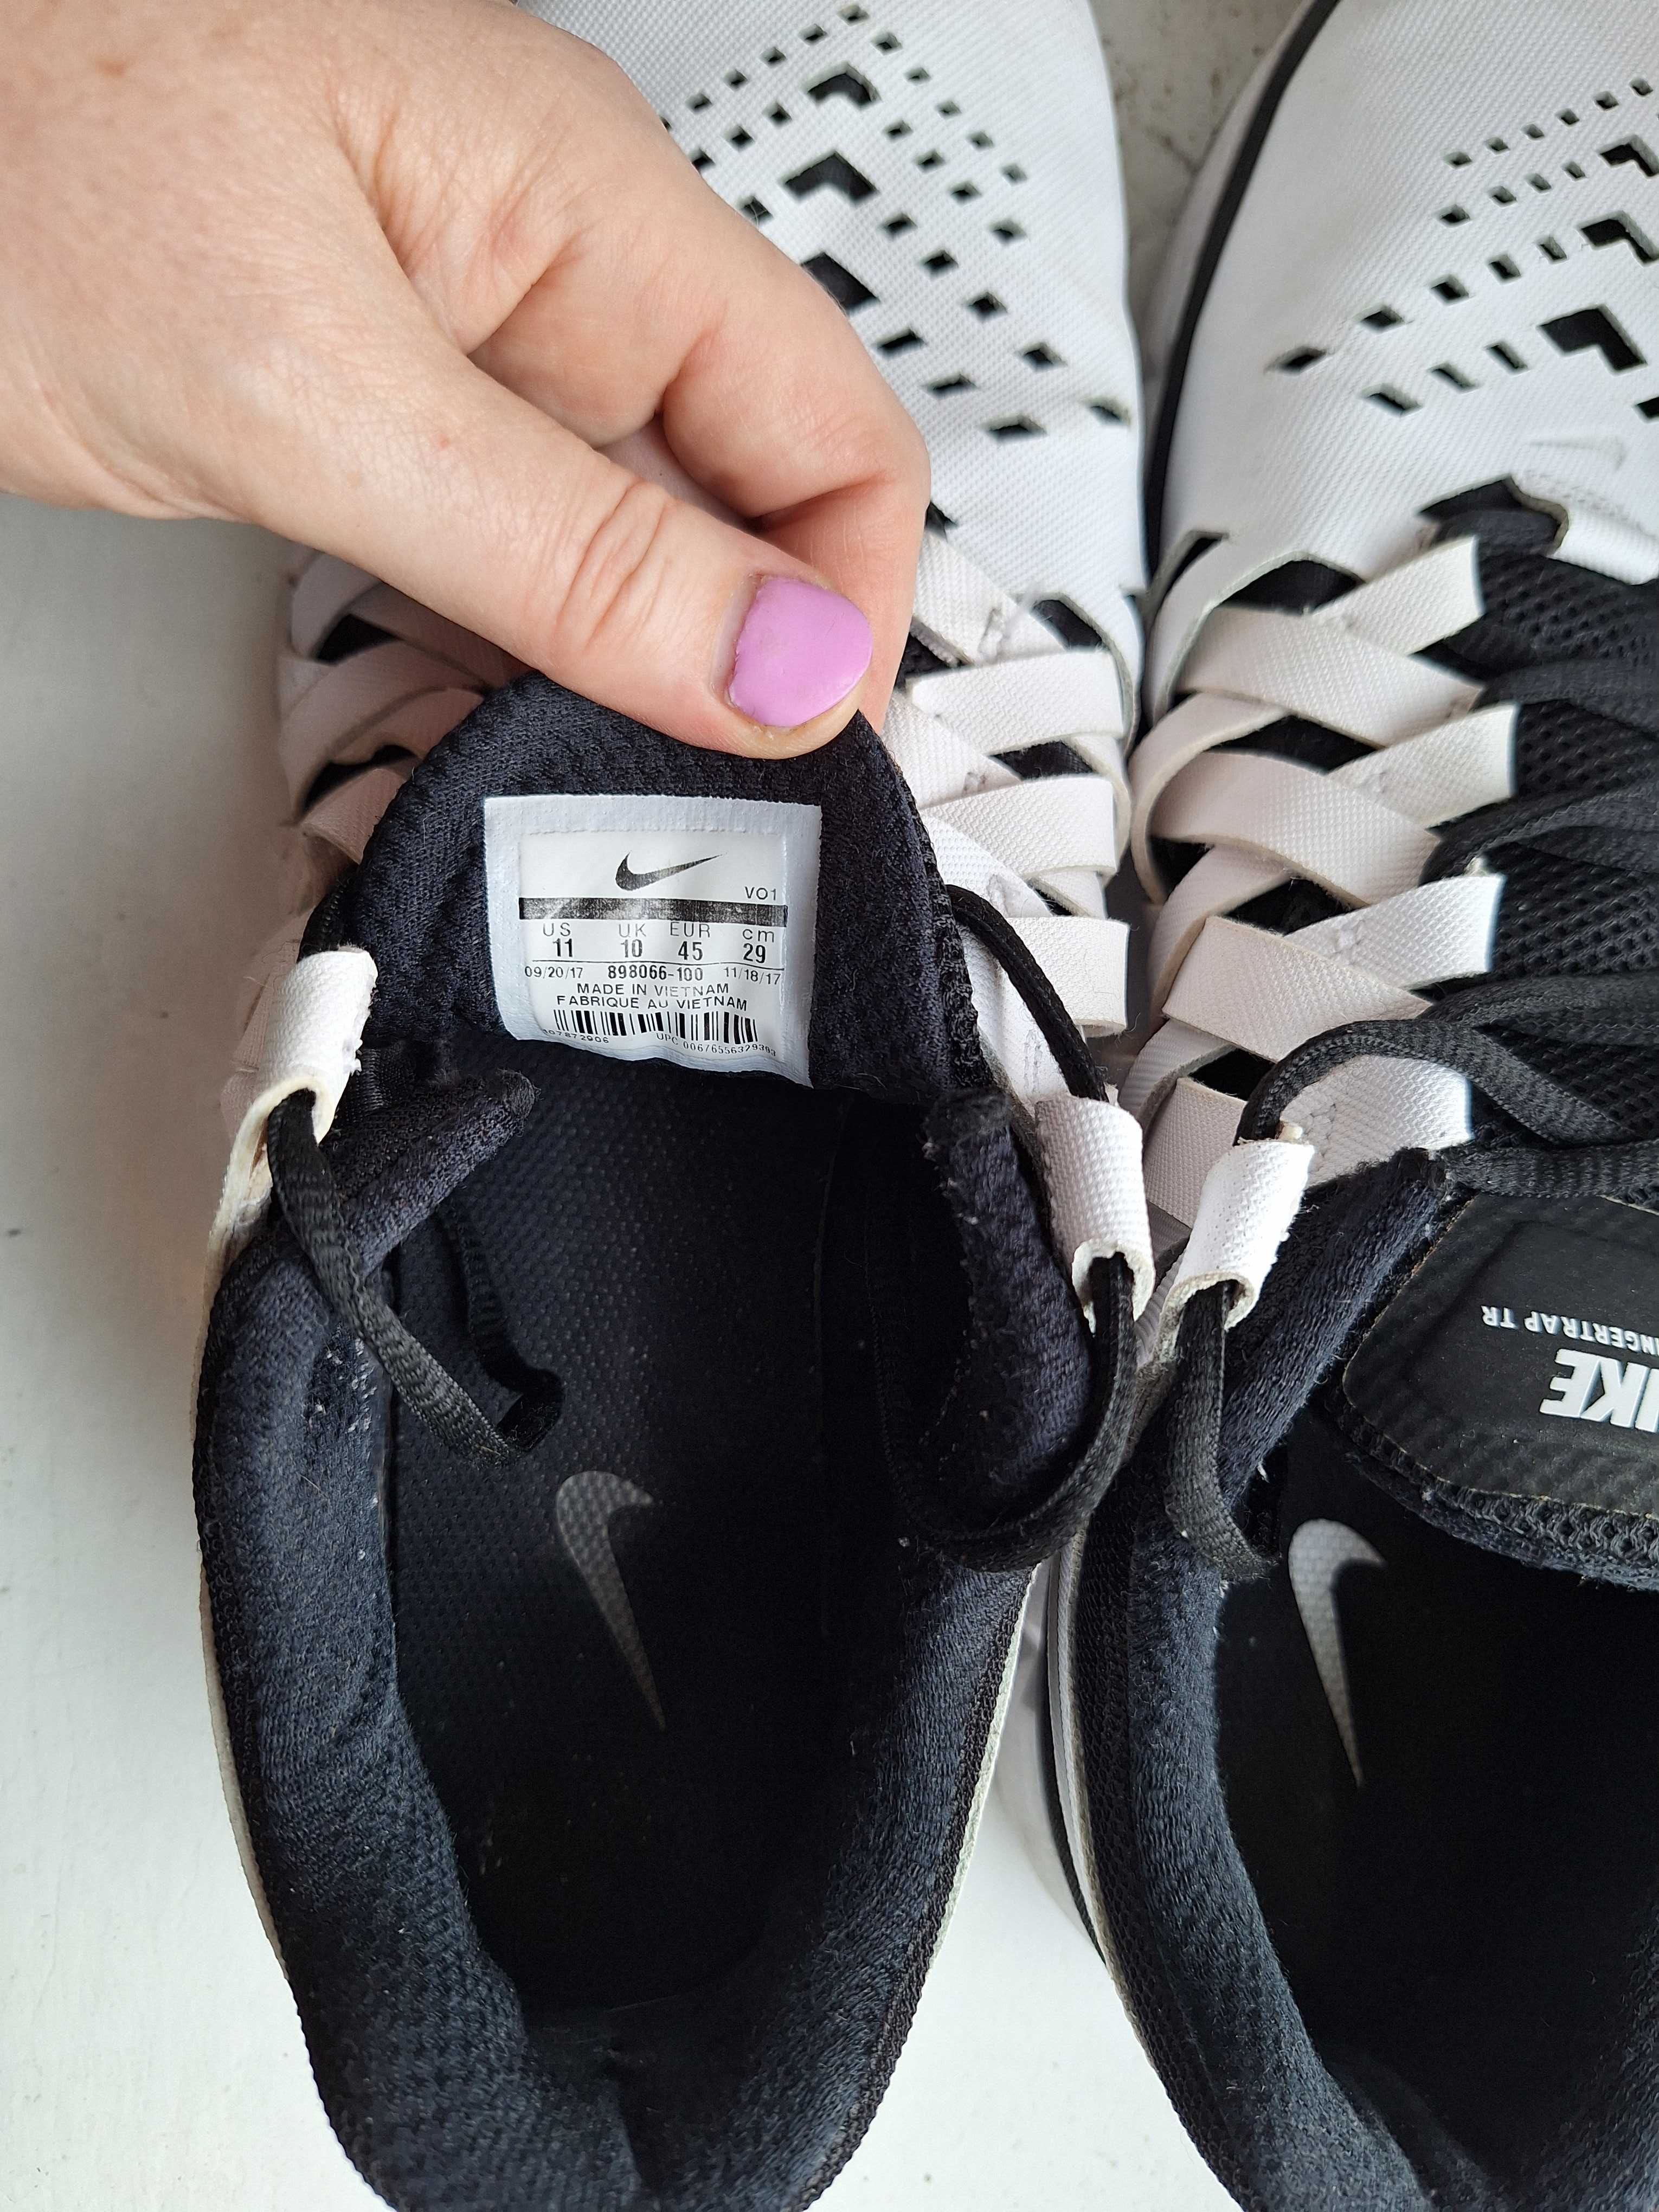 Buty męskie , Nike Lunarlon, rozmiar 45